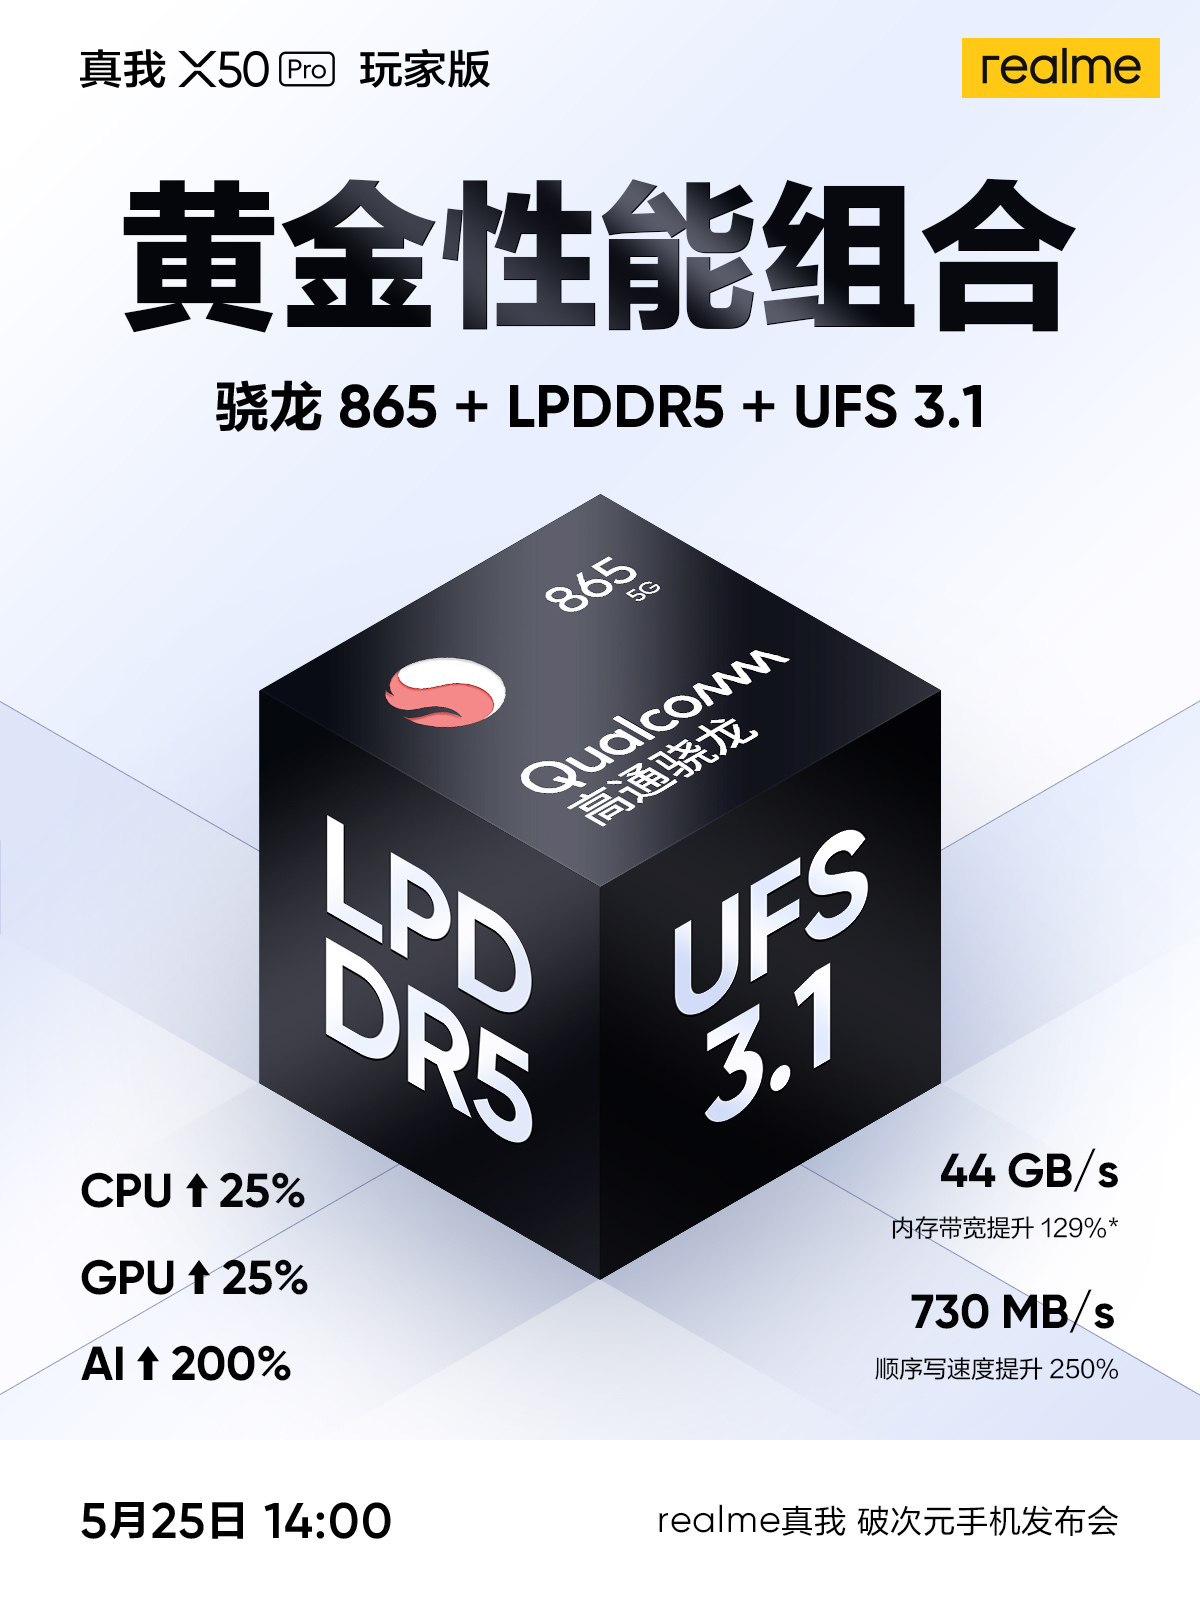 Realme X50 Pro Oyuncu Sürümü UFS 3.1 LPDDR5